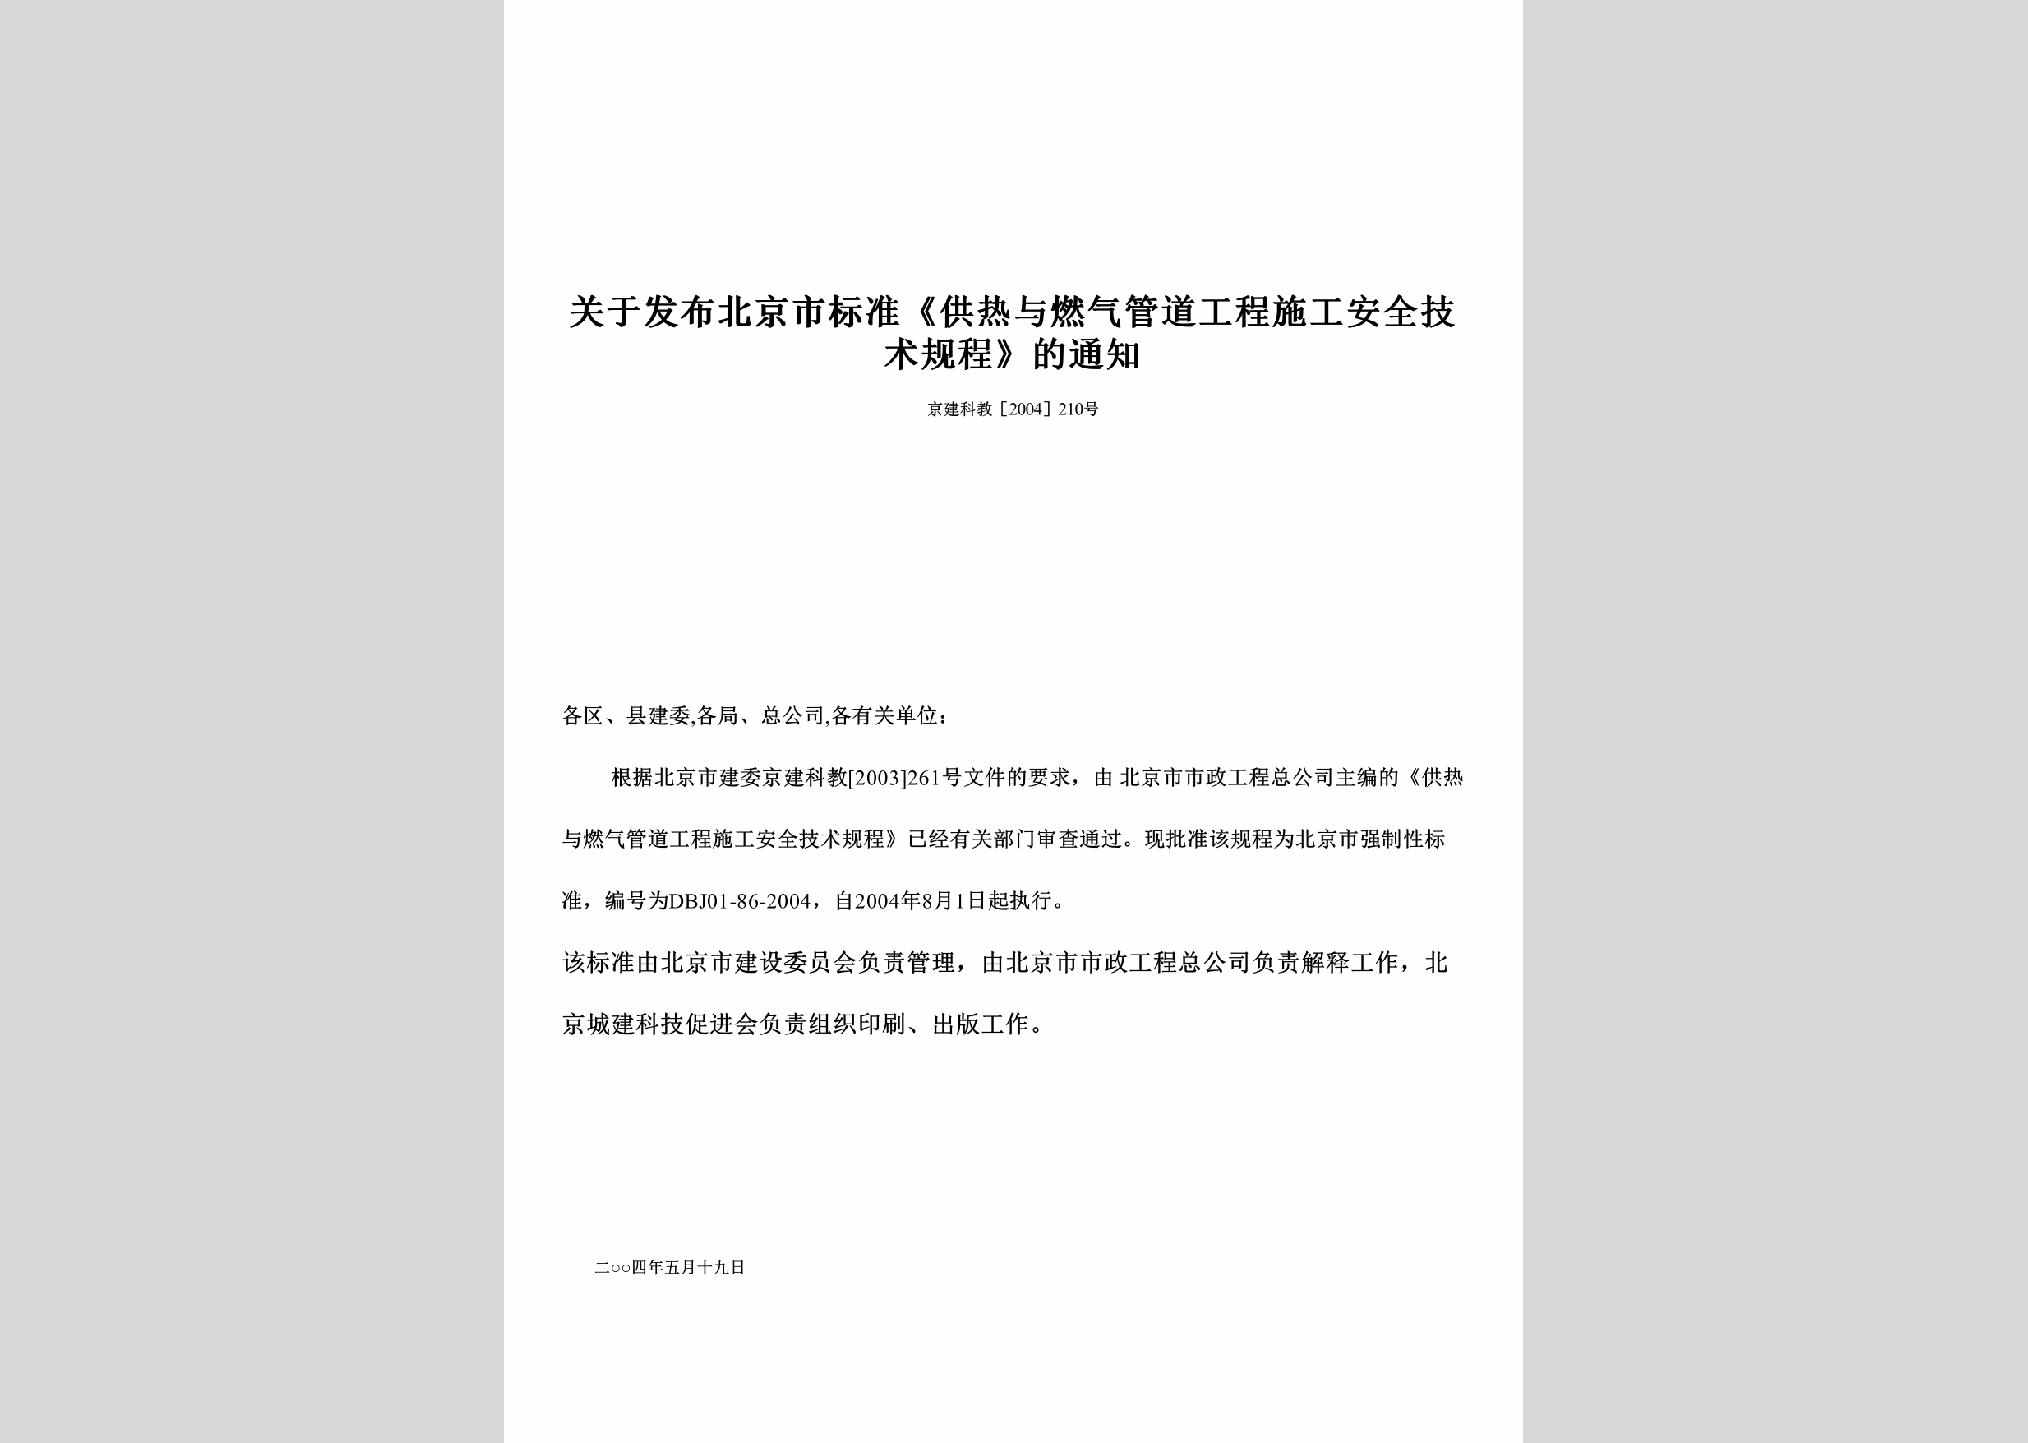 京建科教[2004]210号：关于发布北京市标准《供热与燃气管道工程施工安全技术规程》的通知